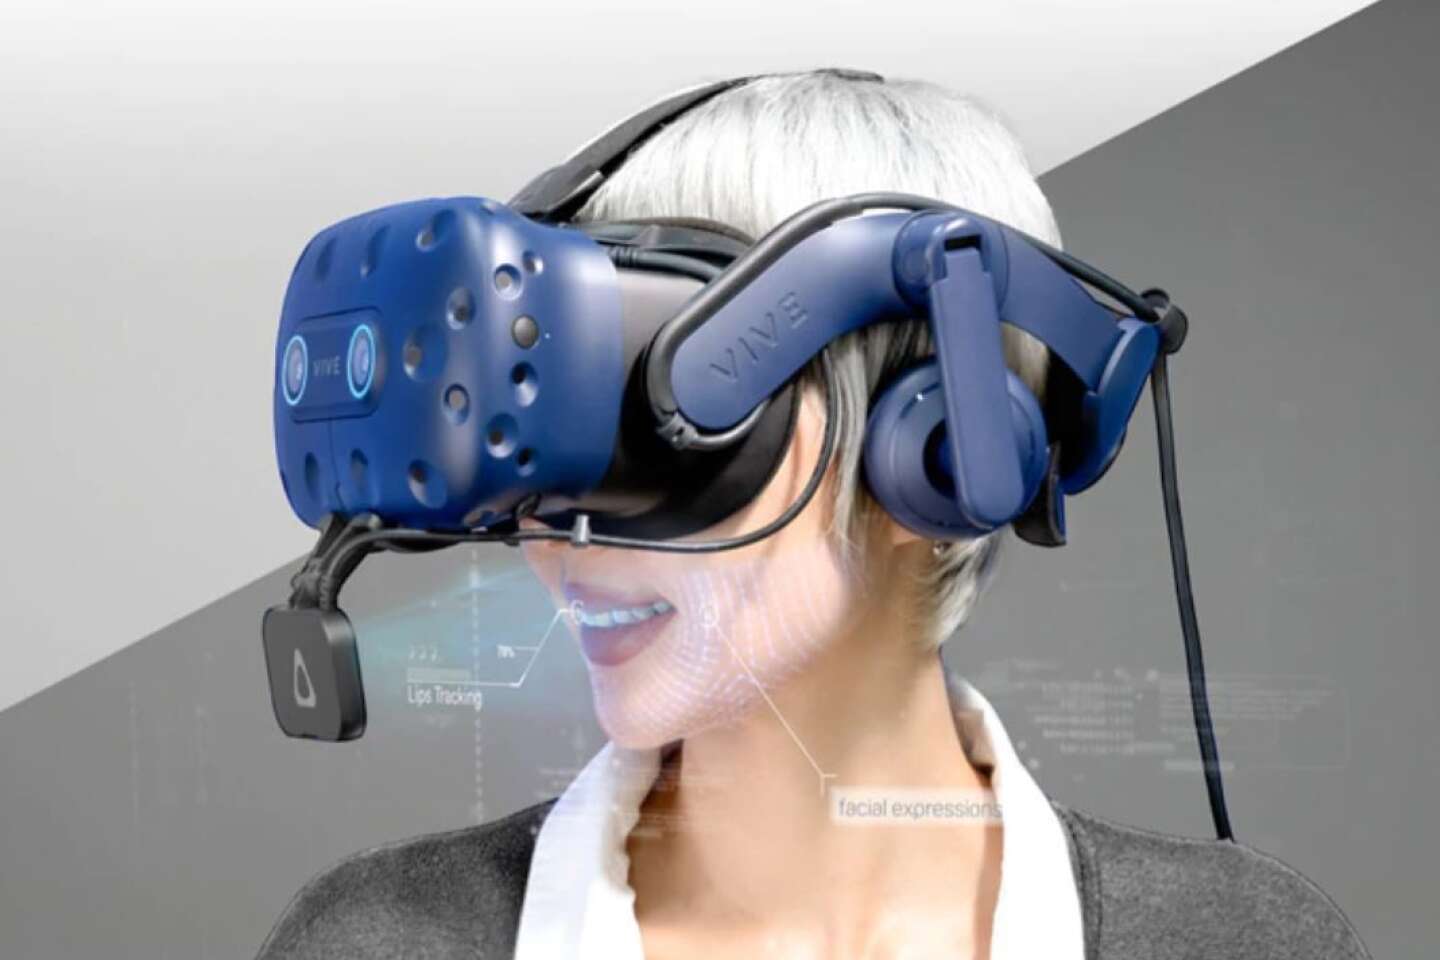 Casque de réalité virtuelle PlayStation VR, entre design